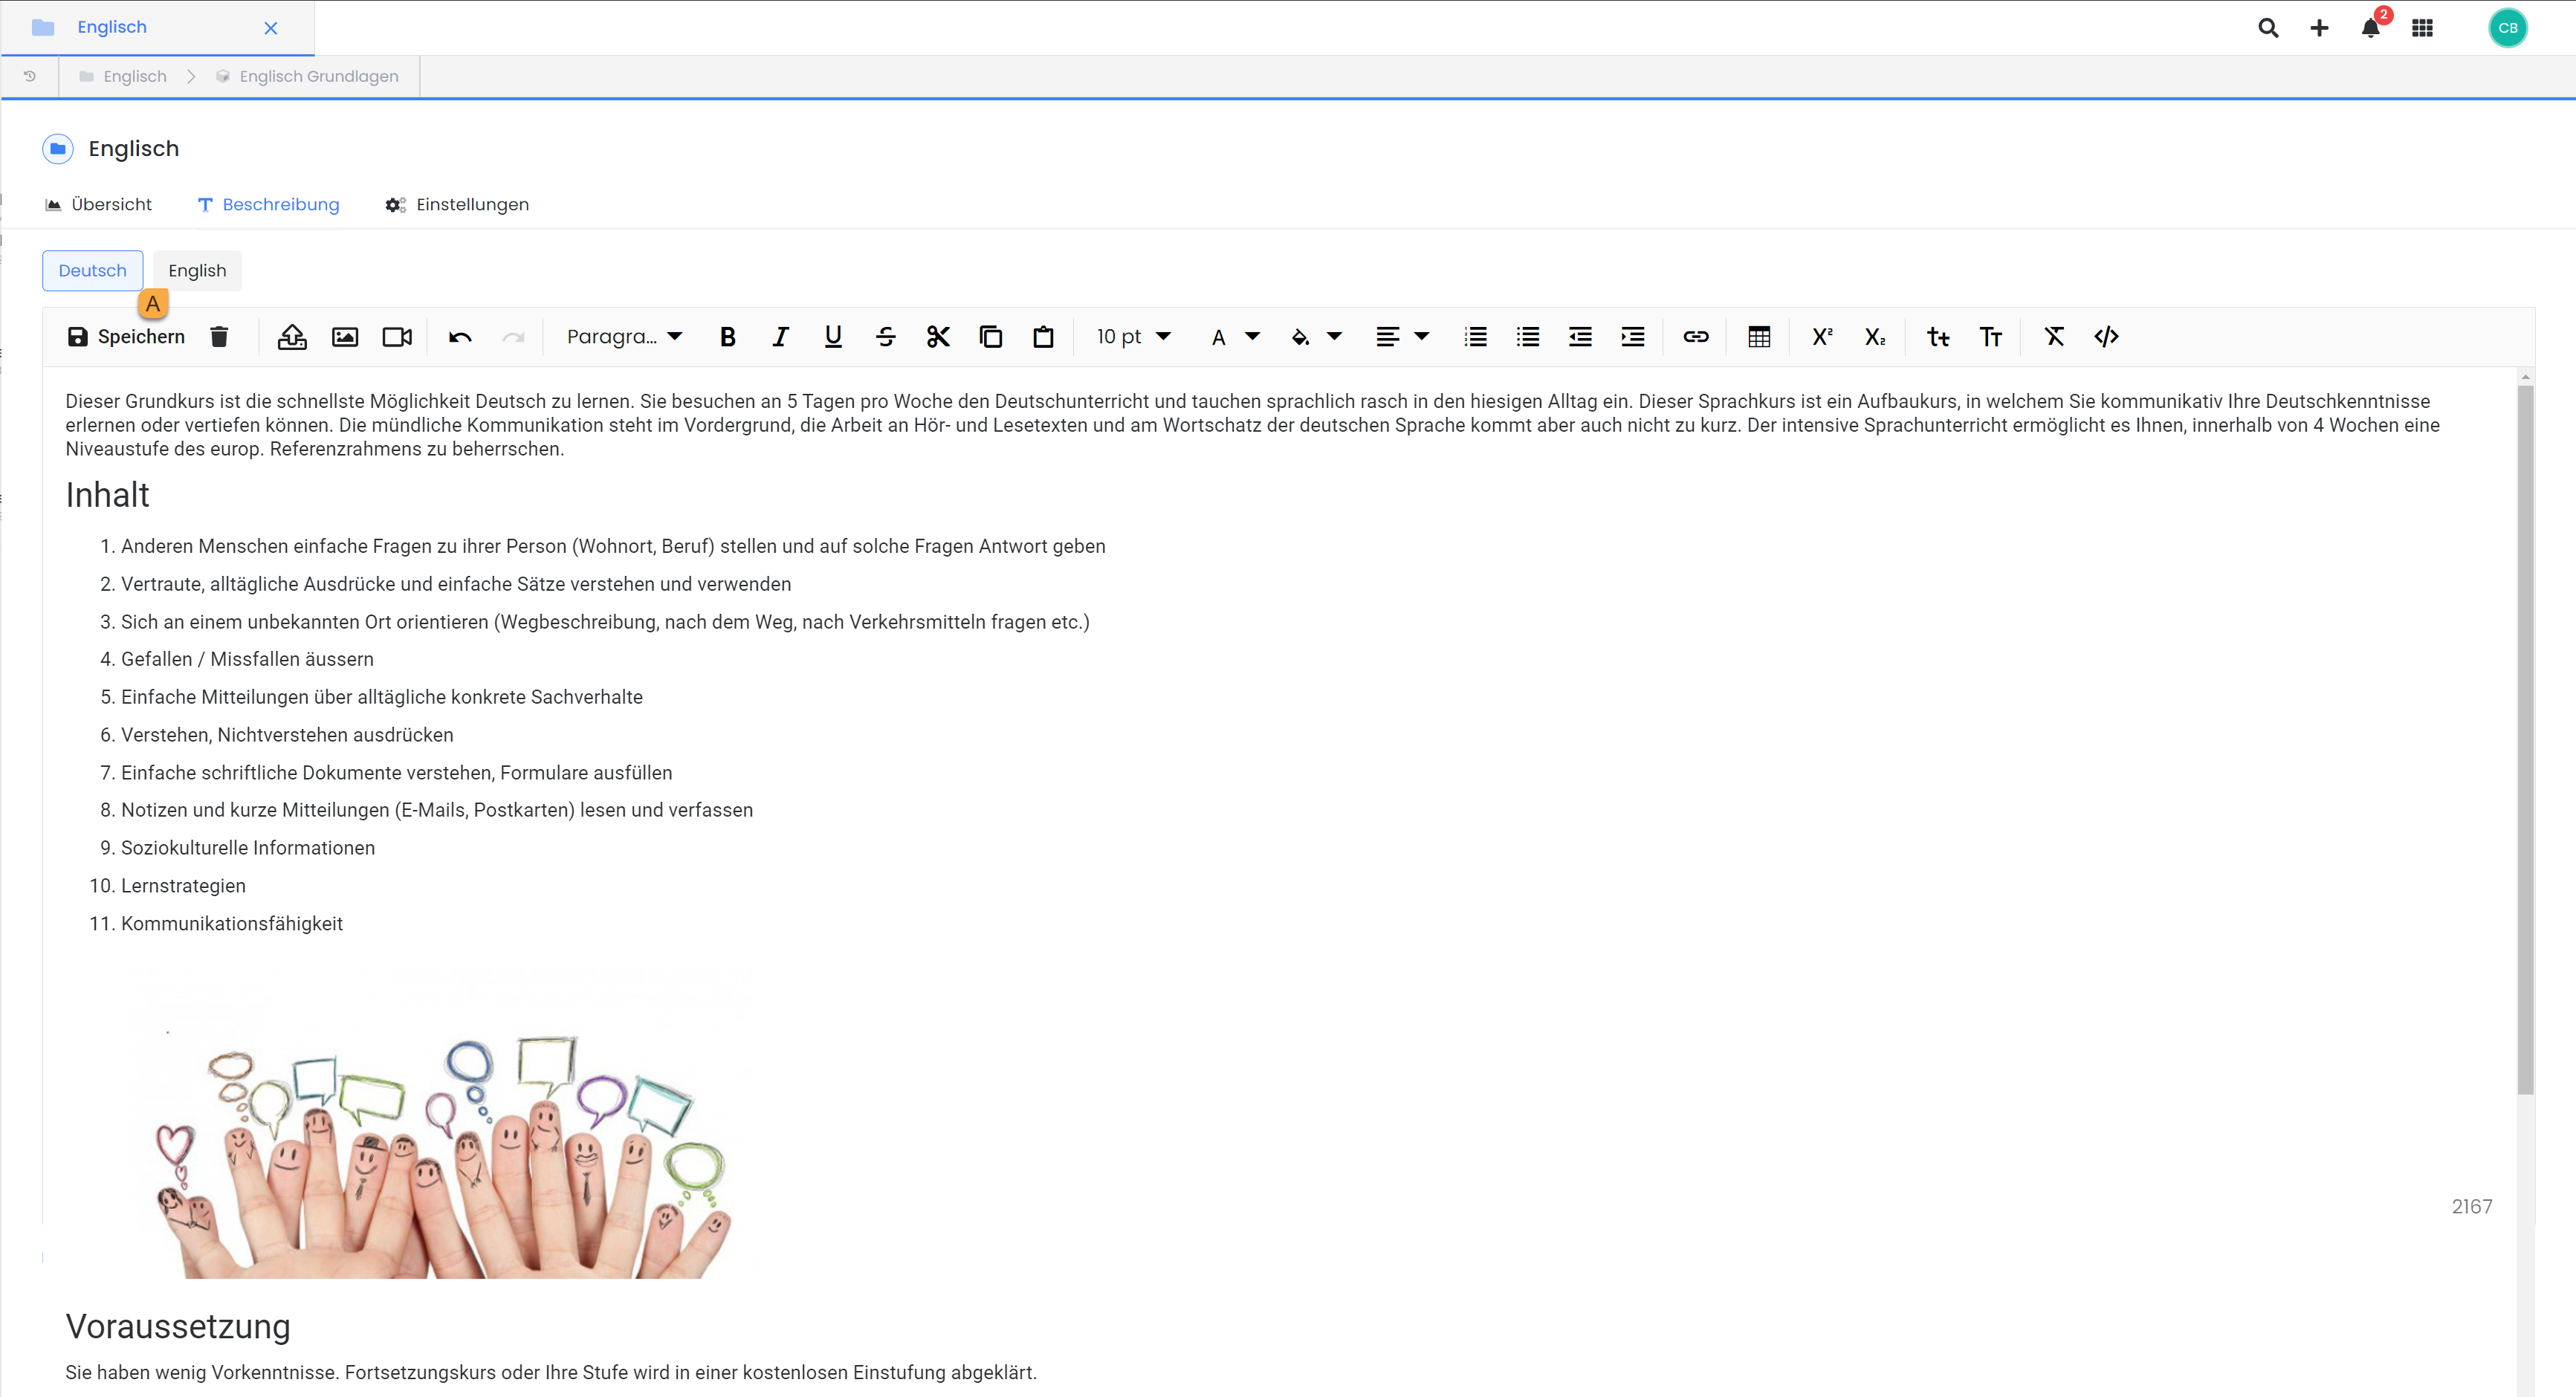 Dieser Screenshot zeigt die Benutzeroberfläche von edoobox, dem Online-Buchungssystem. Es wird der Texteditor einer Kategorie gezeigt, bei dem ein Beschreibungstext hinterlegt werden kann. Es wird darauf hingewiesen, dass der Admin die Beschreibungsinhalte in verschiedenen Sprachen hinterlegen kann.